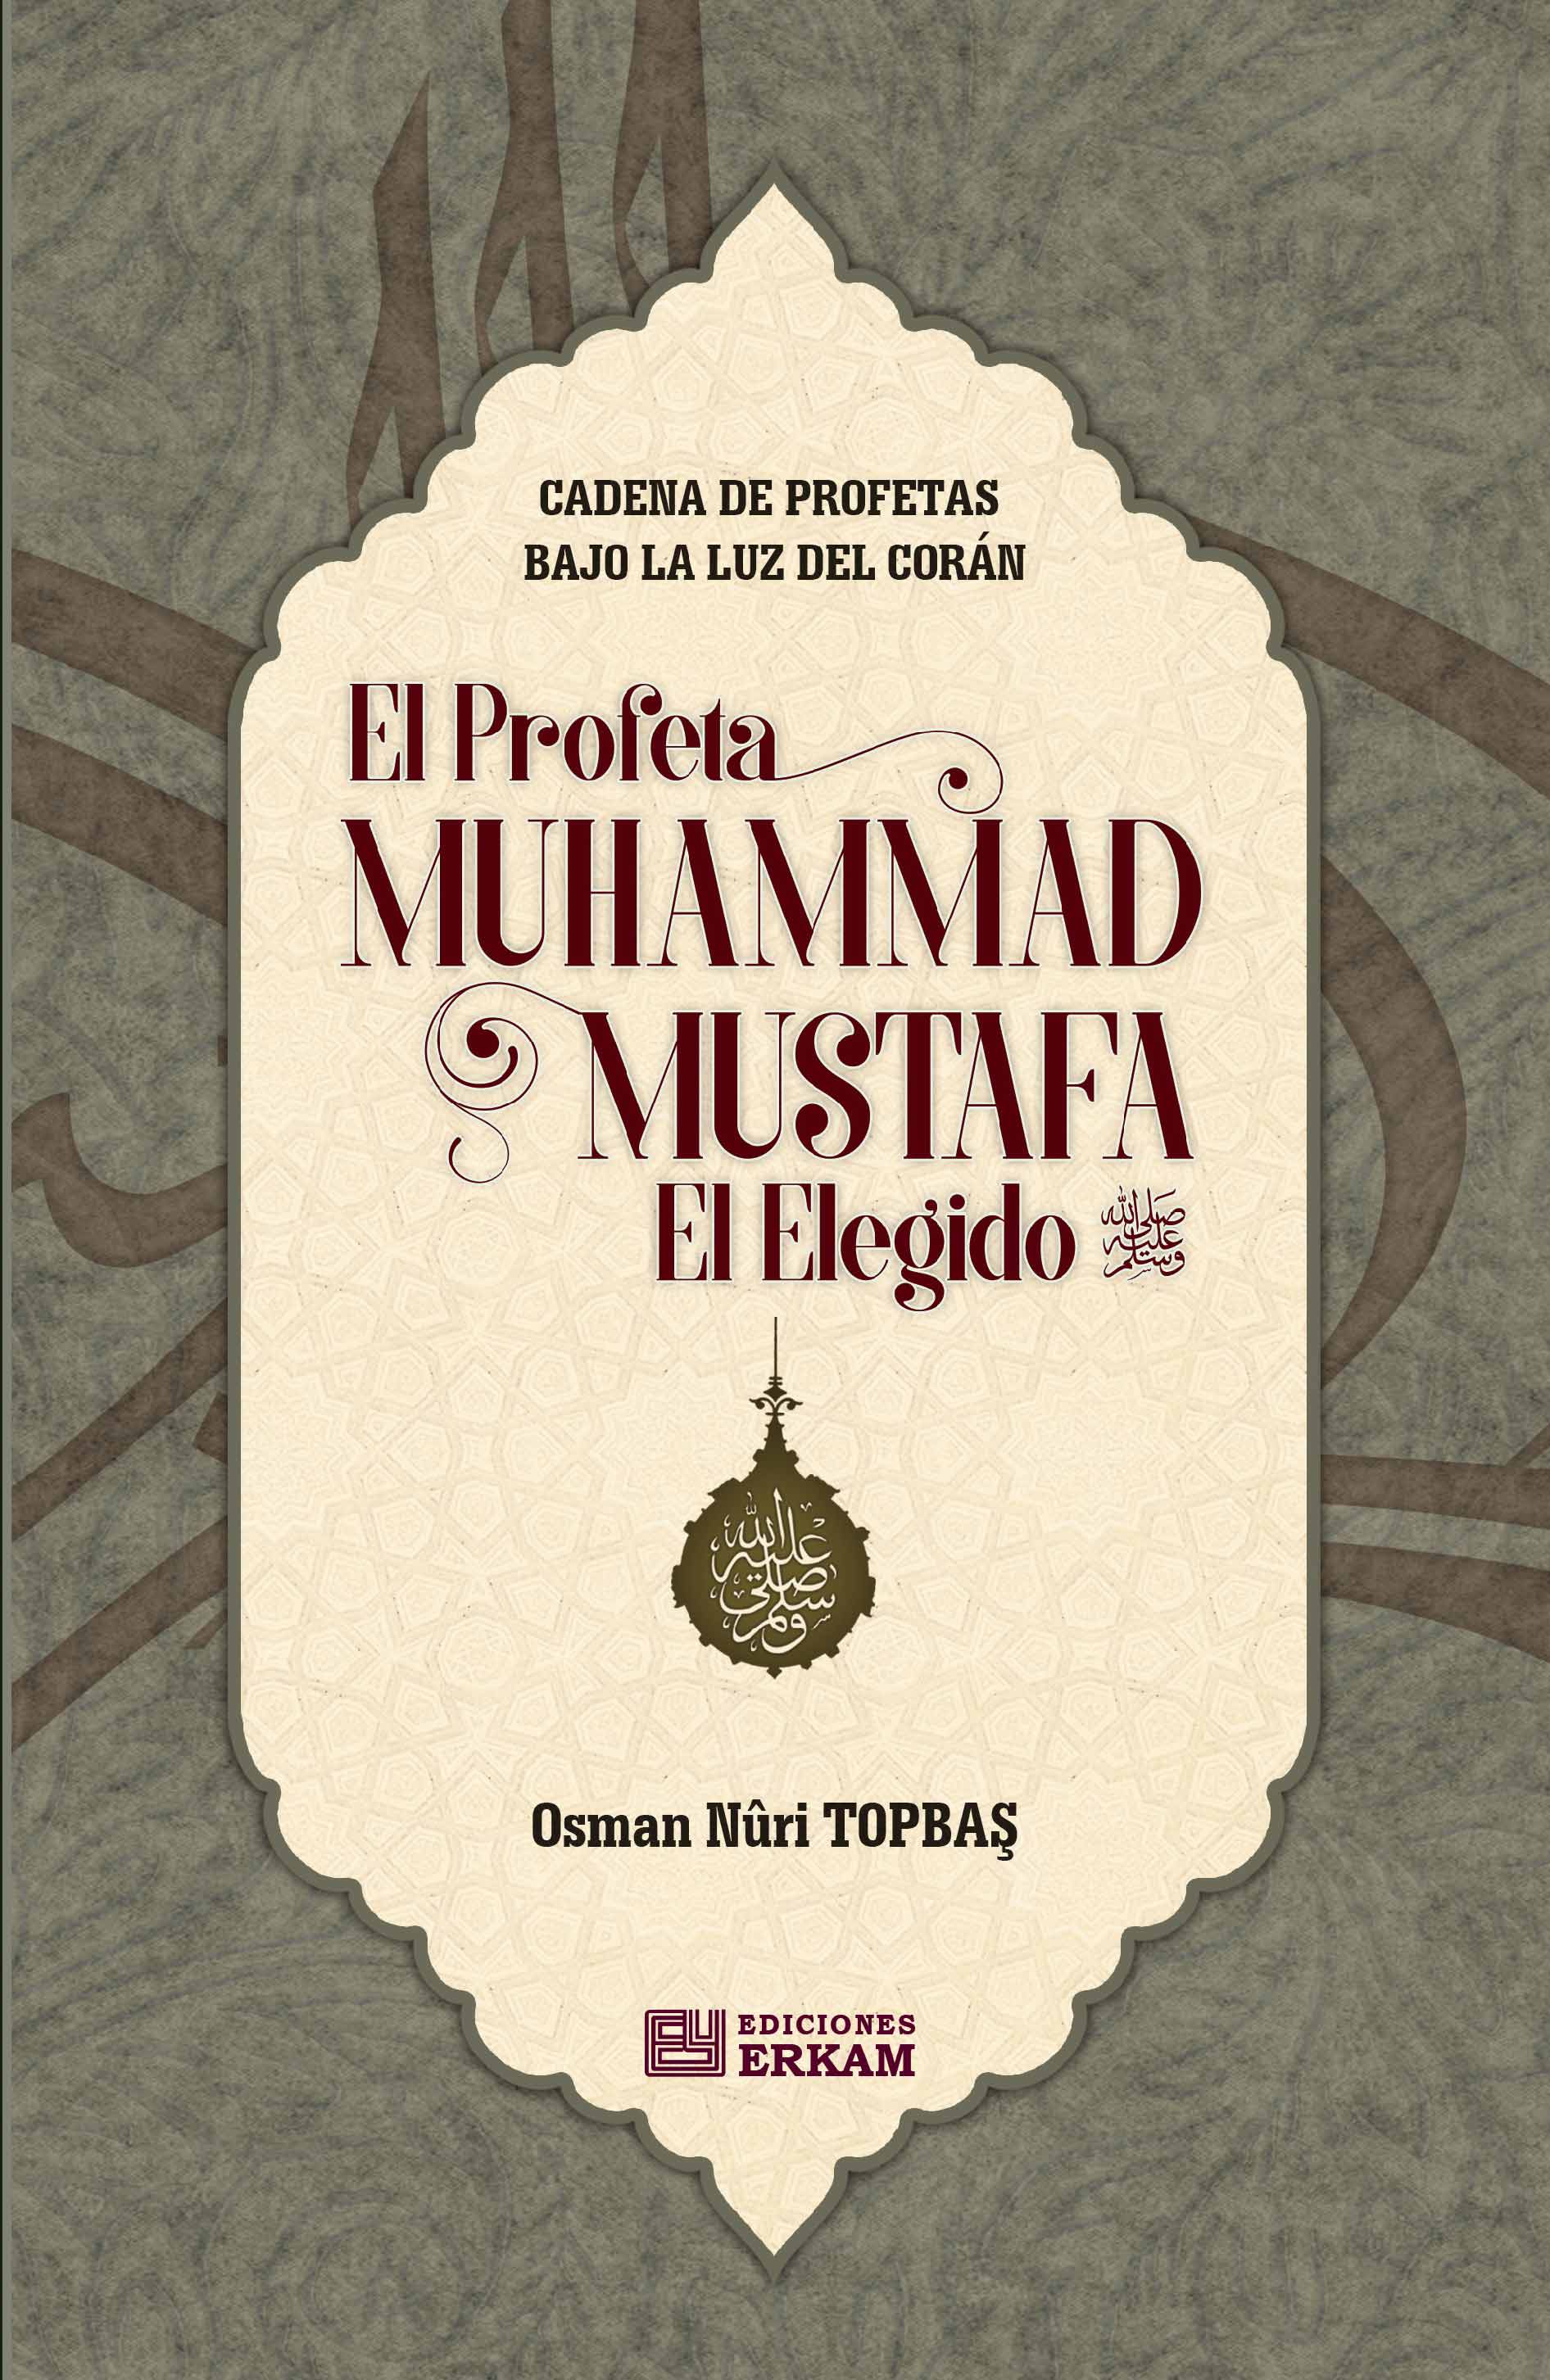 El Profeta Muhammad Mustafa, El Elegido